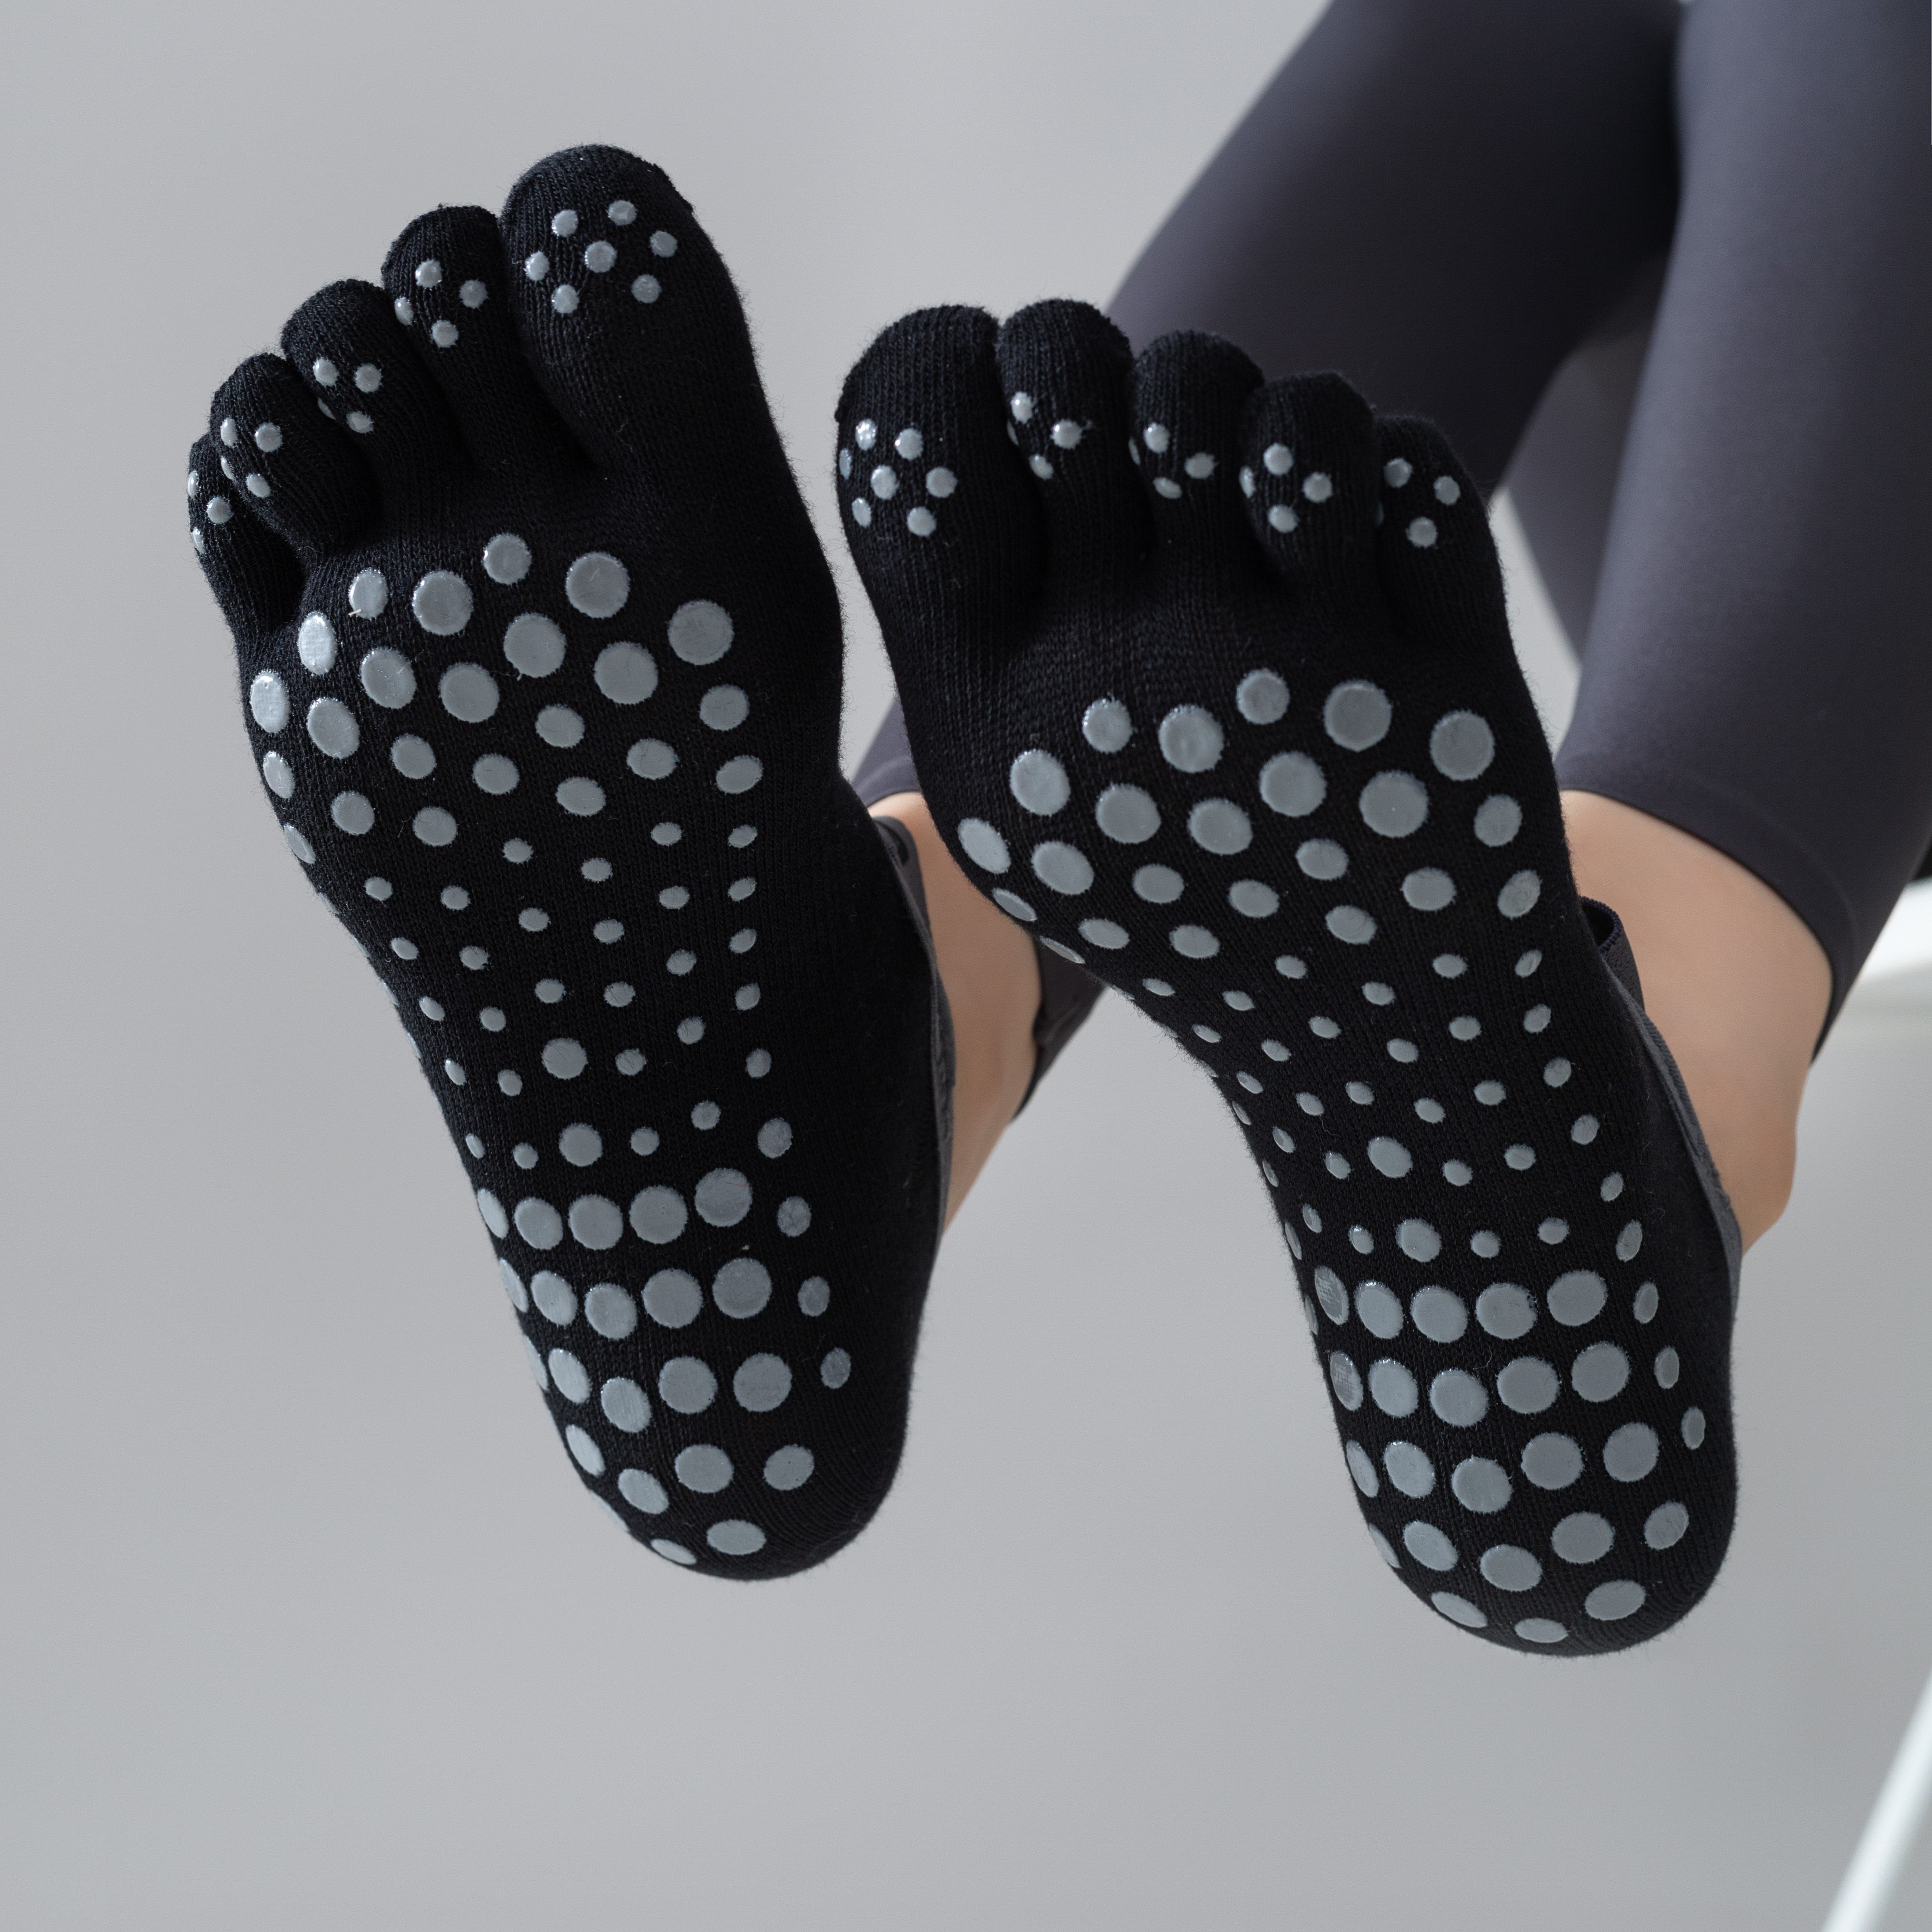 5pairs Yoga Socks For Women With Grips, Non-slip Five Toe Socks For  Pilates, Barre, Ballet, Fitness